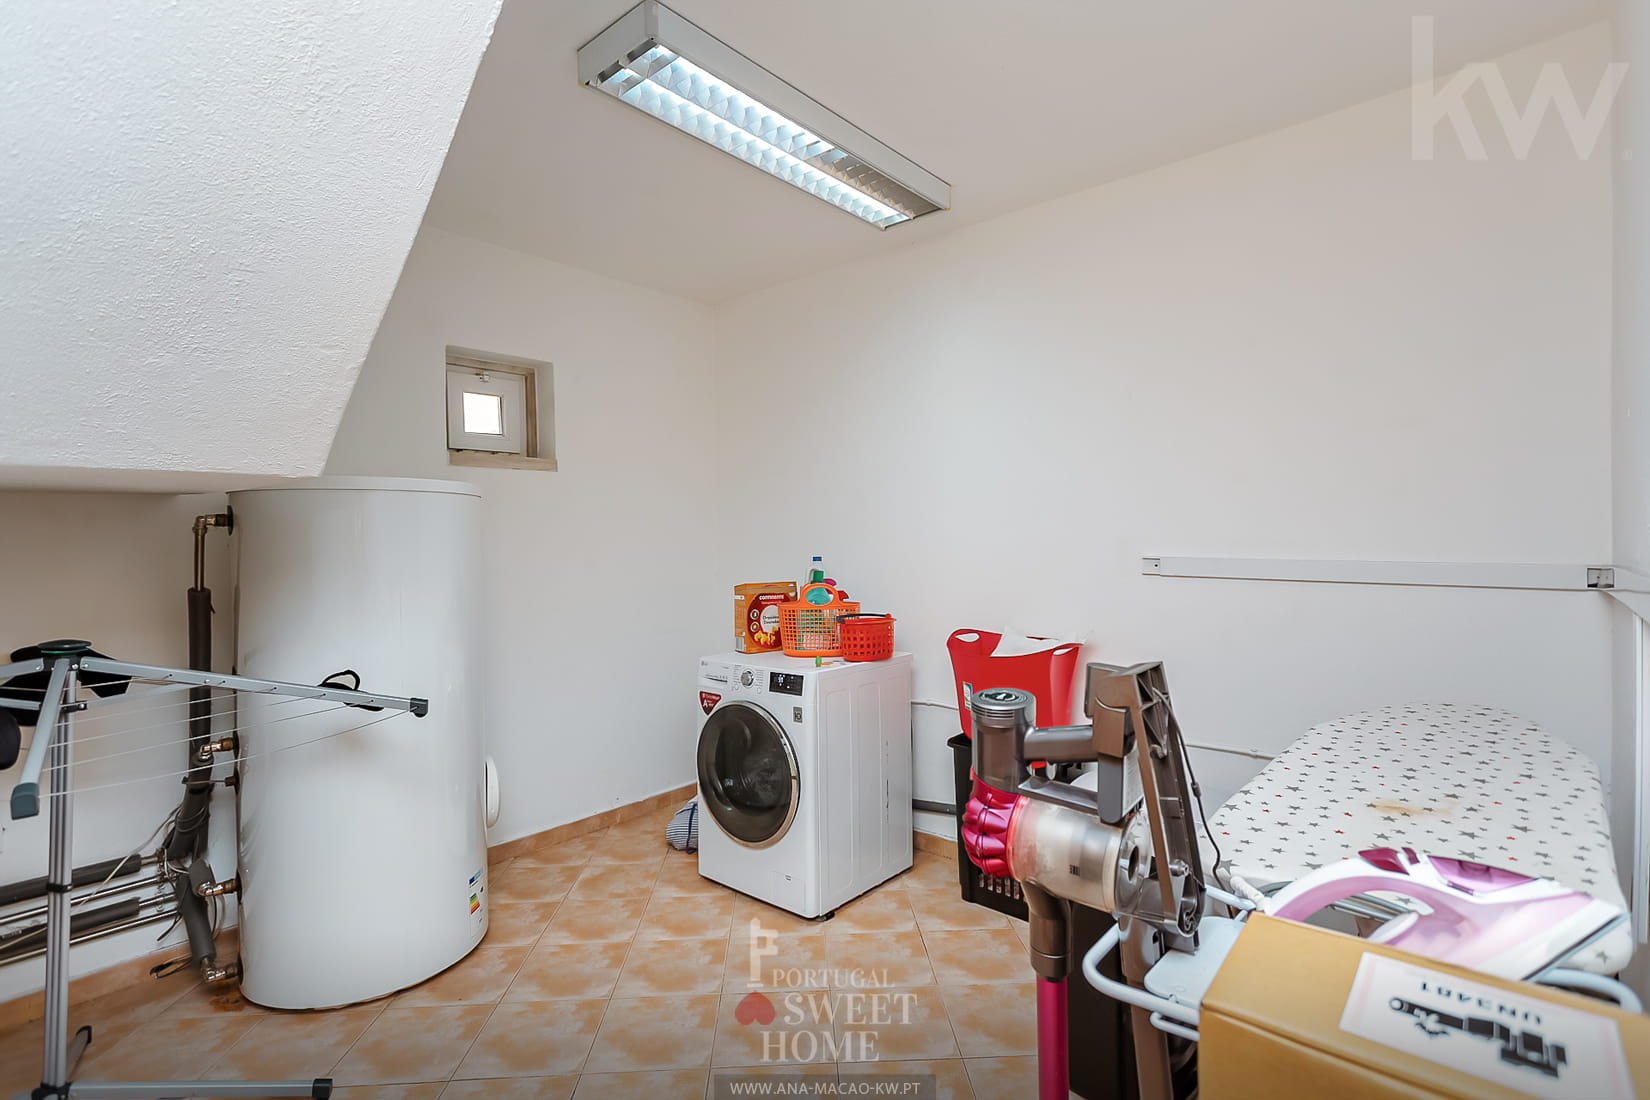 Área técnica (10 m2) na divisão da lavandaria